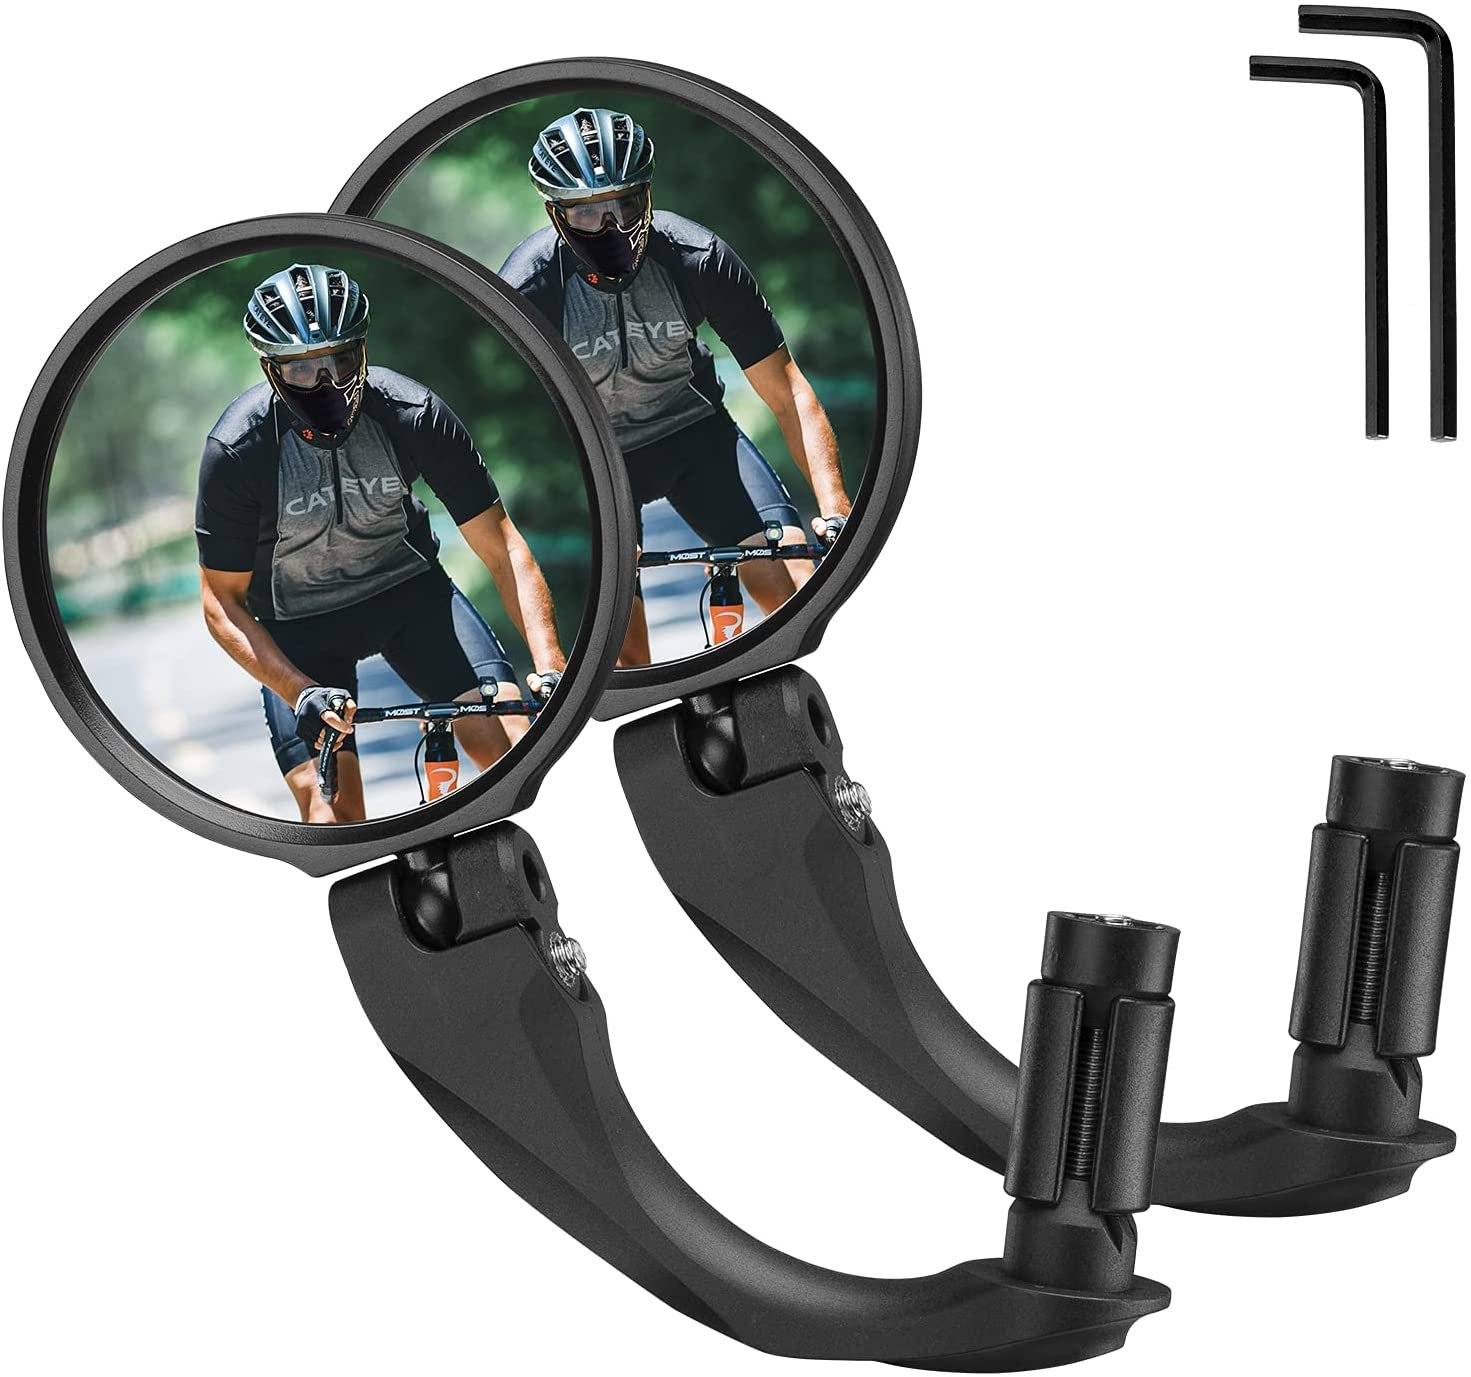 Зеркало велосипедное RockBros, акриловое, заднего вида, круглое 7,5 см, длина ручки 9 см, черный, FK-272 камера заднего вида silverstone f1 interpower ip 860 f r универсальная